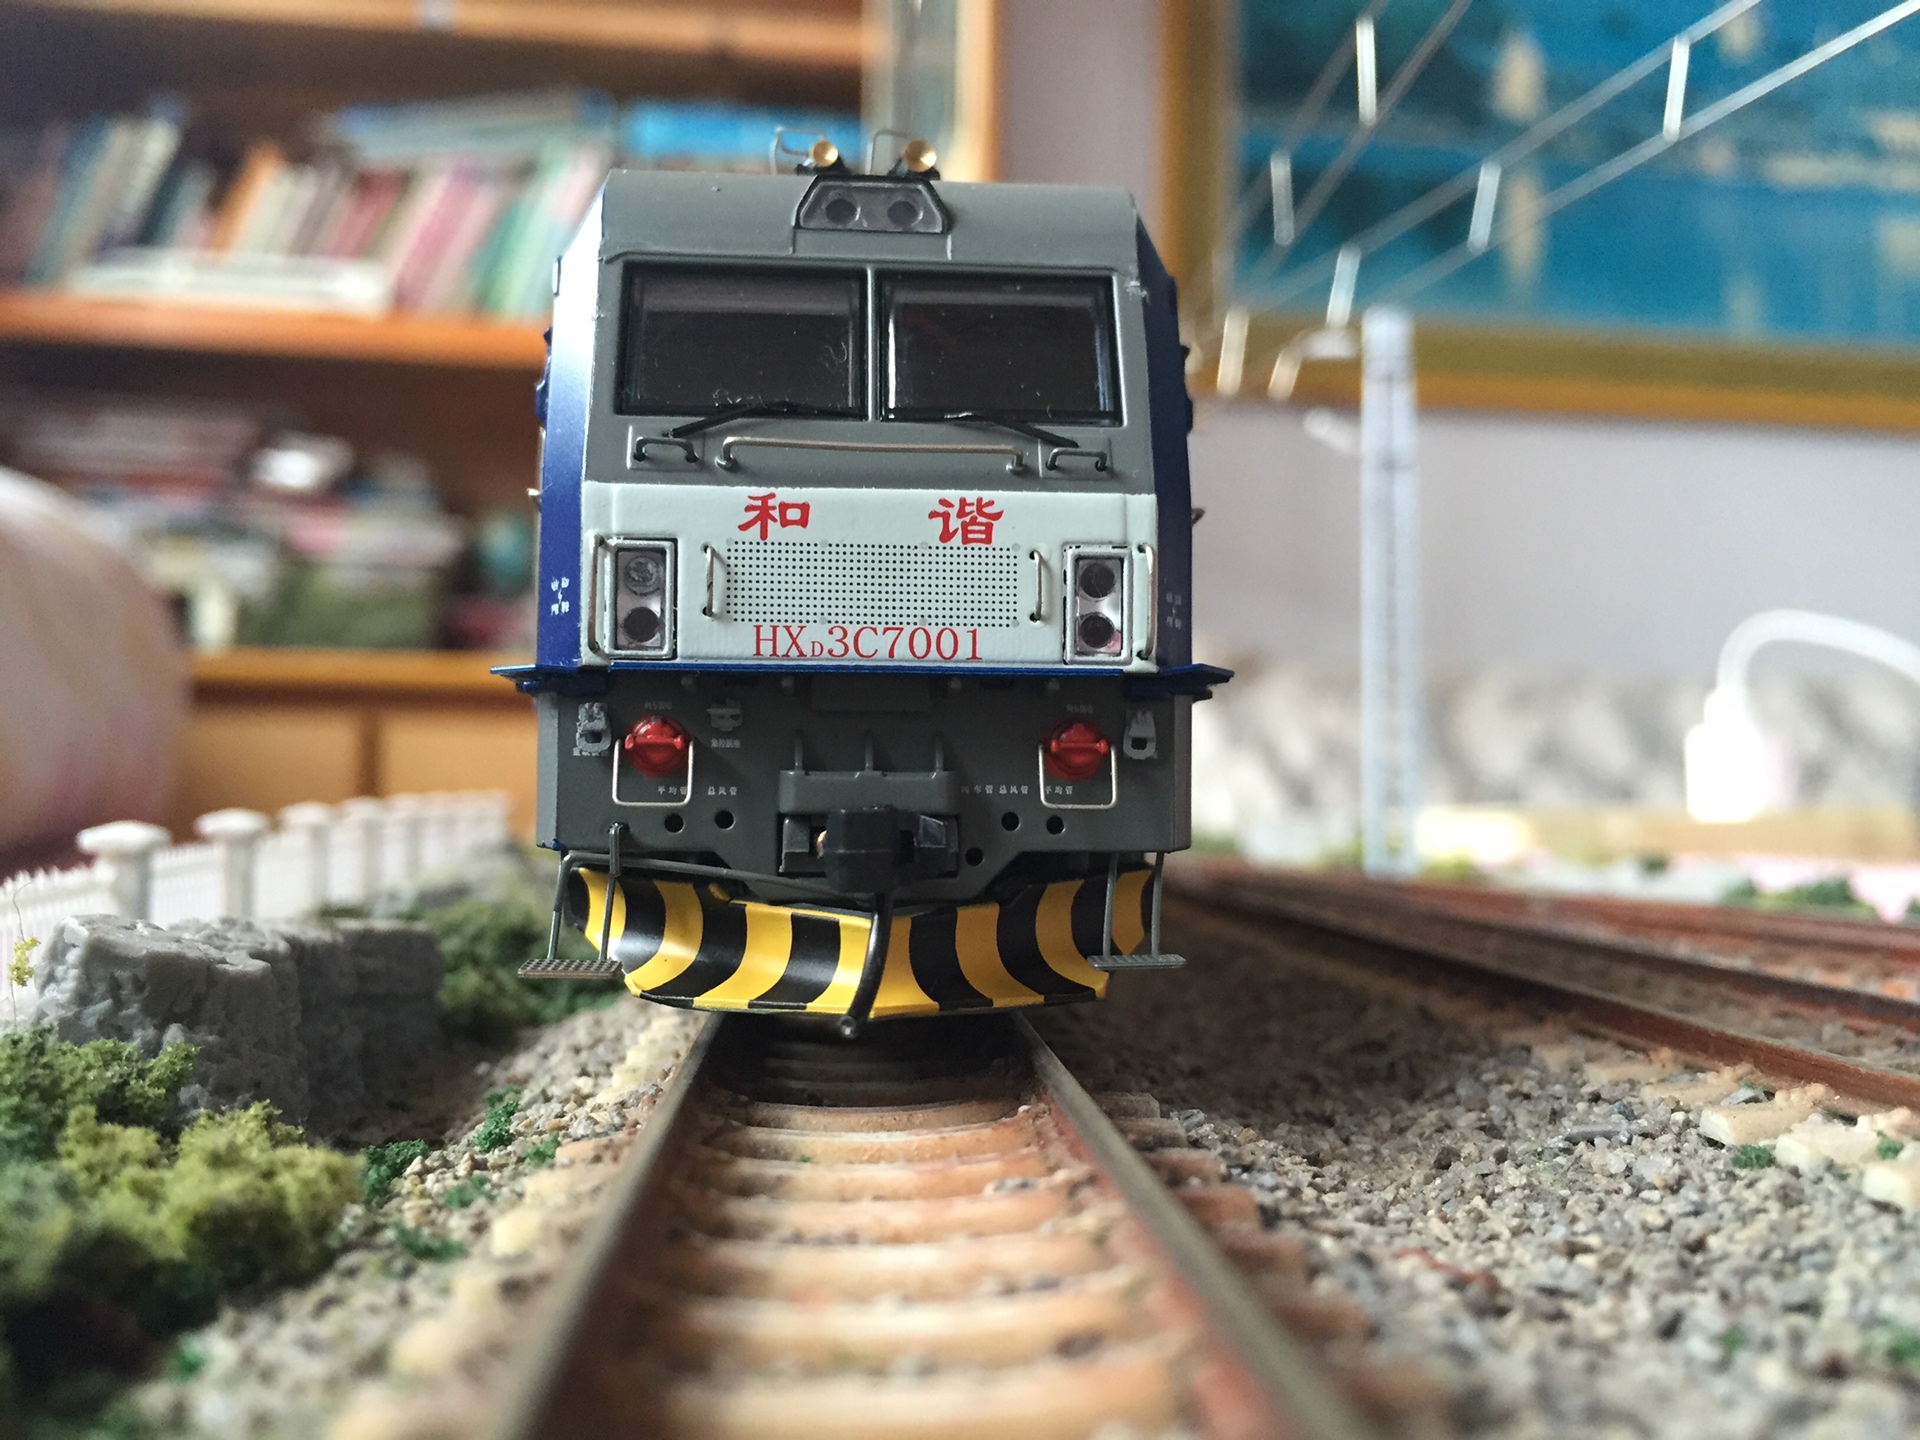 大同地方铁路 hxd3c7001 电力机车模型 3月前